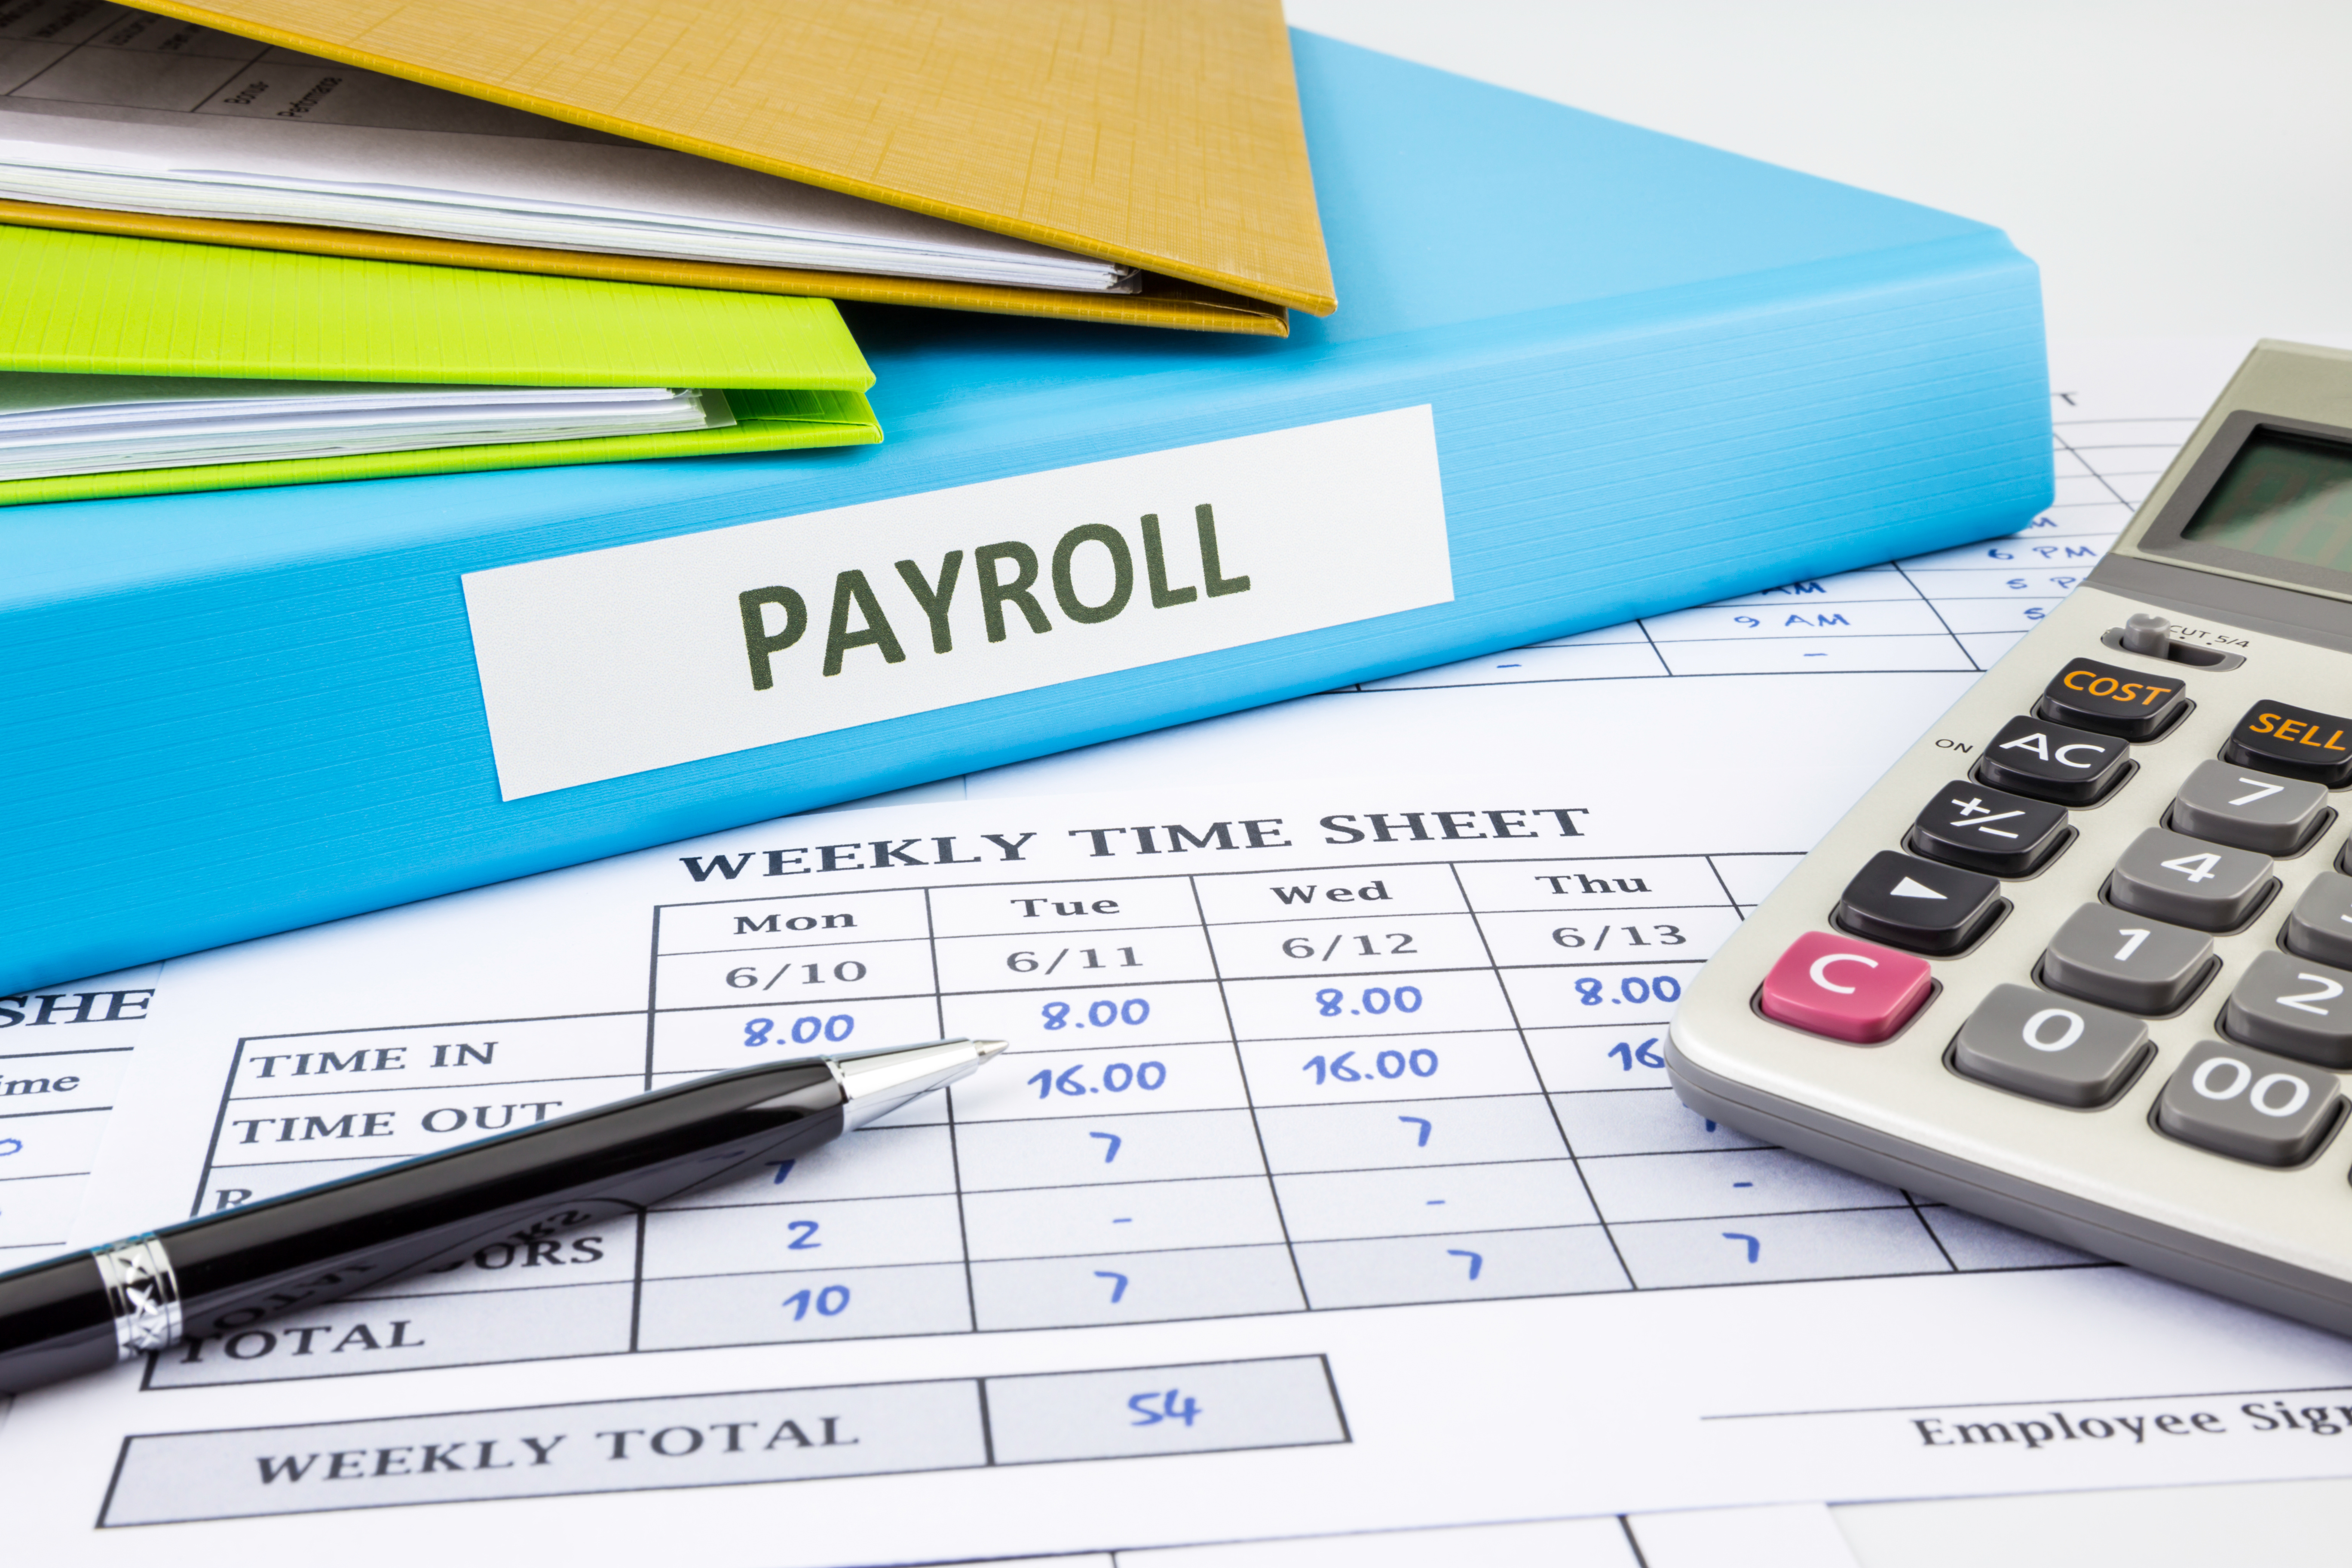 Basic Tips for Payroll & Remittances